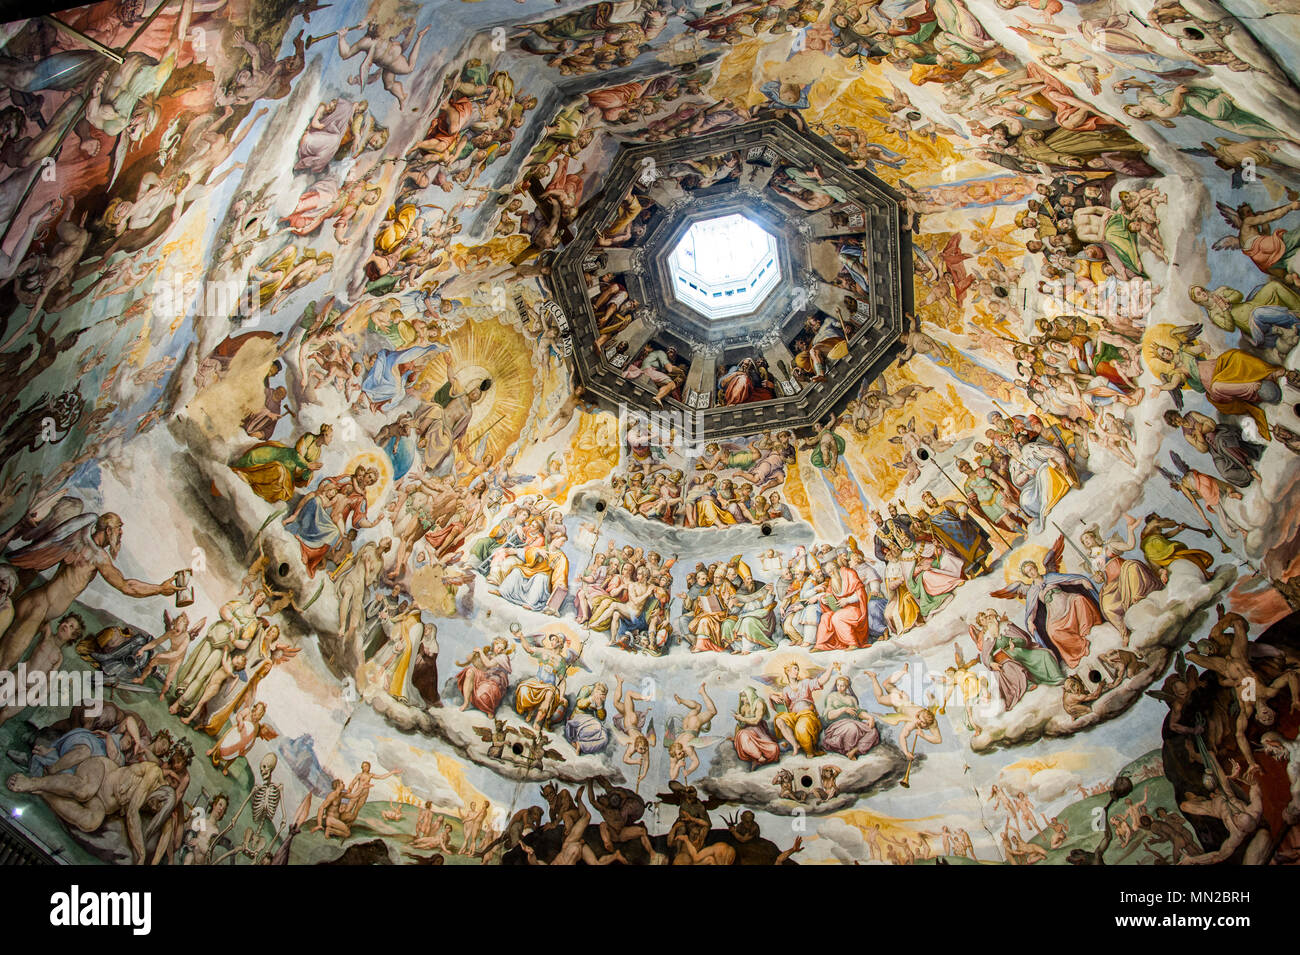 Fresques de la coupole de la cathédrale Santa Maria del Fiore, le Duomo (cathédrale) de Florence, UNESCO World Heritage Site. La Toscane, Italie, Europe Banque D'Images